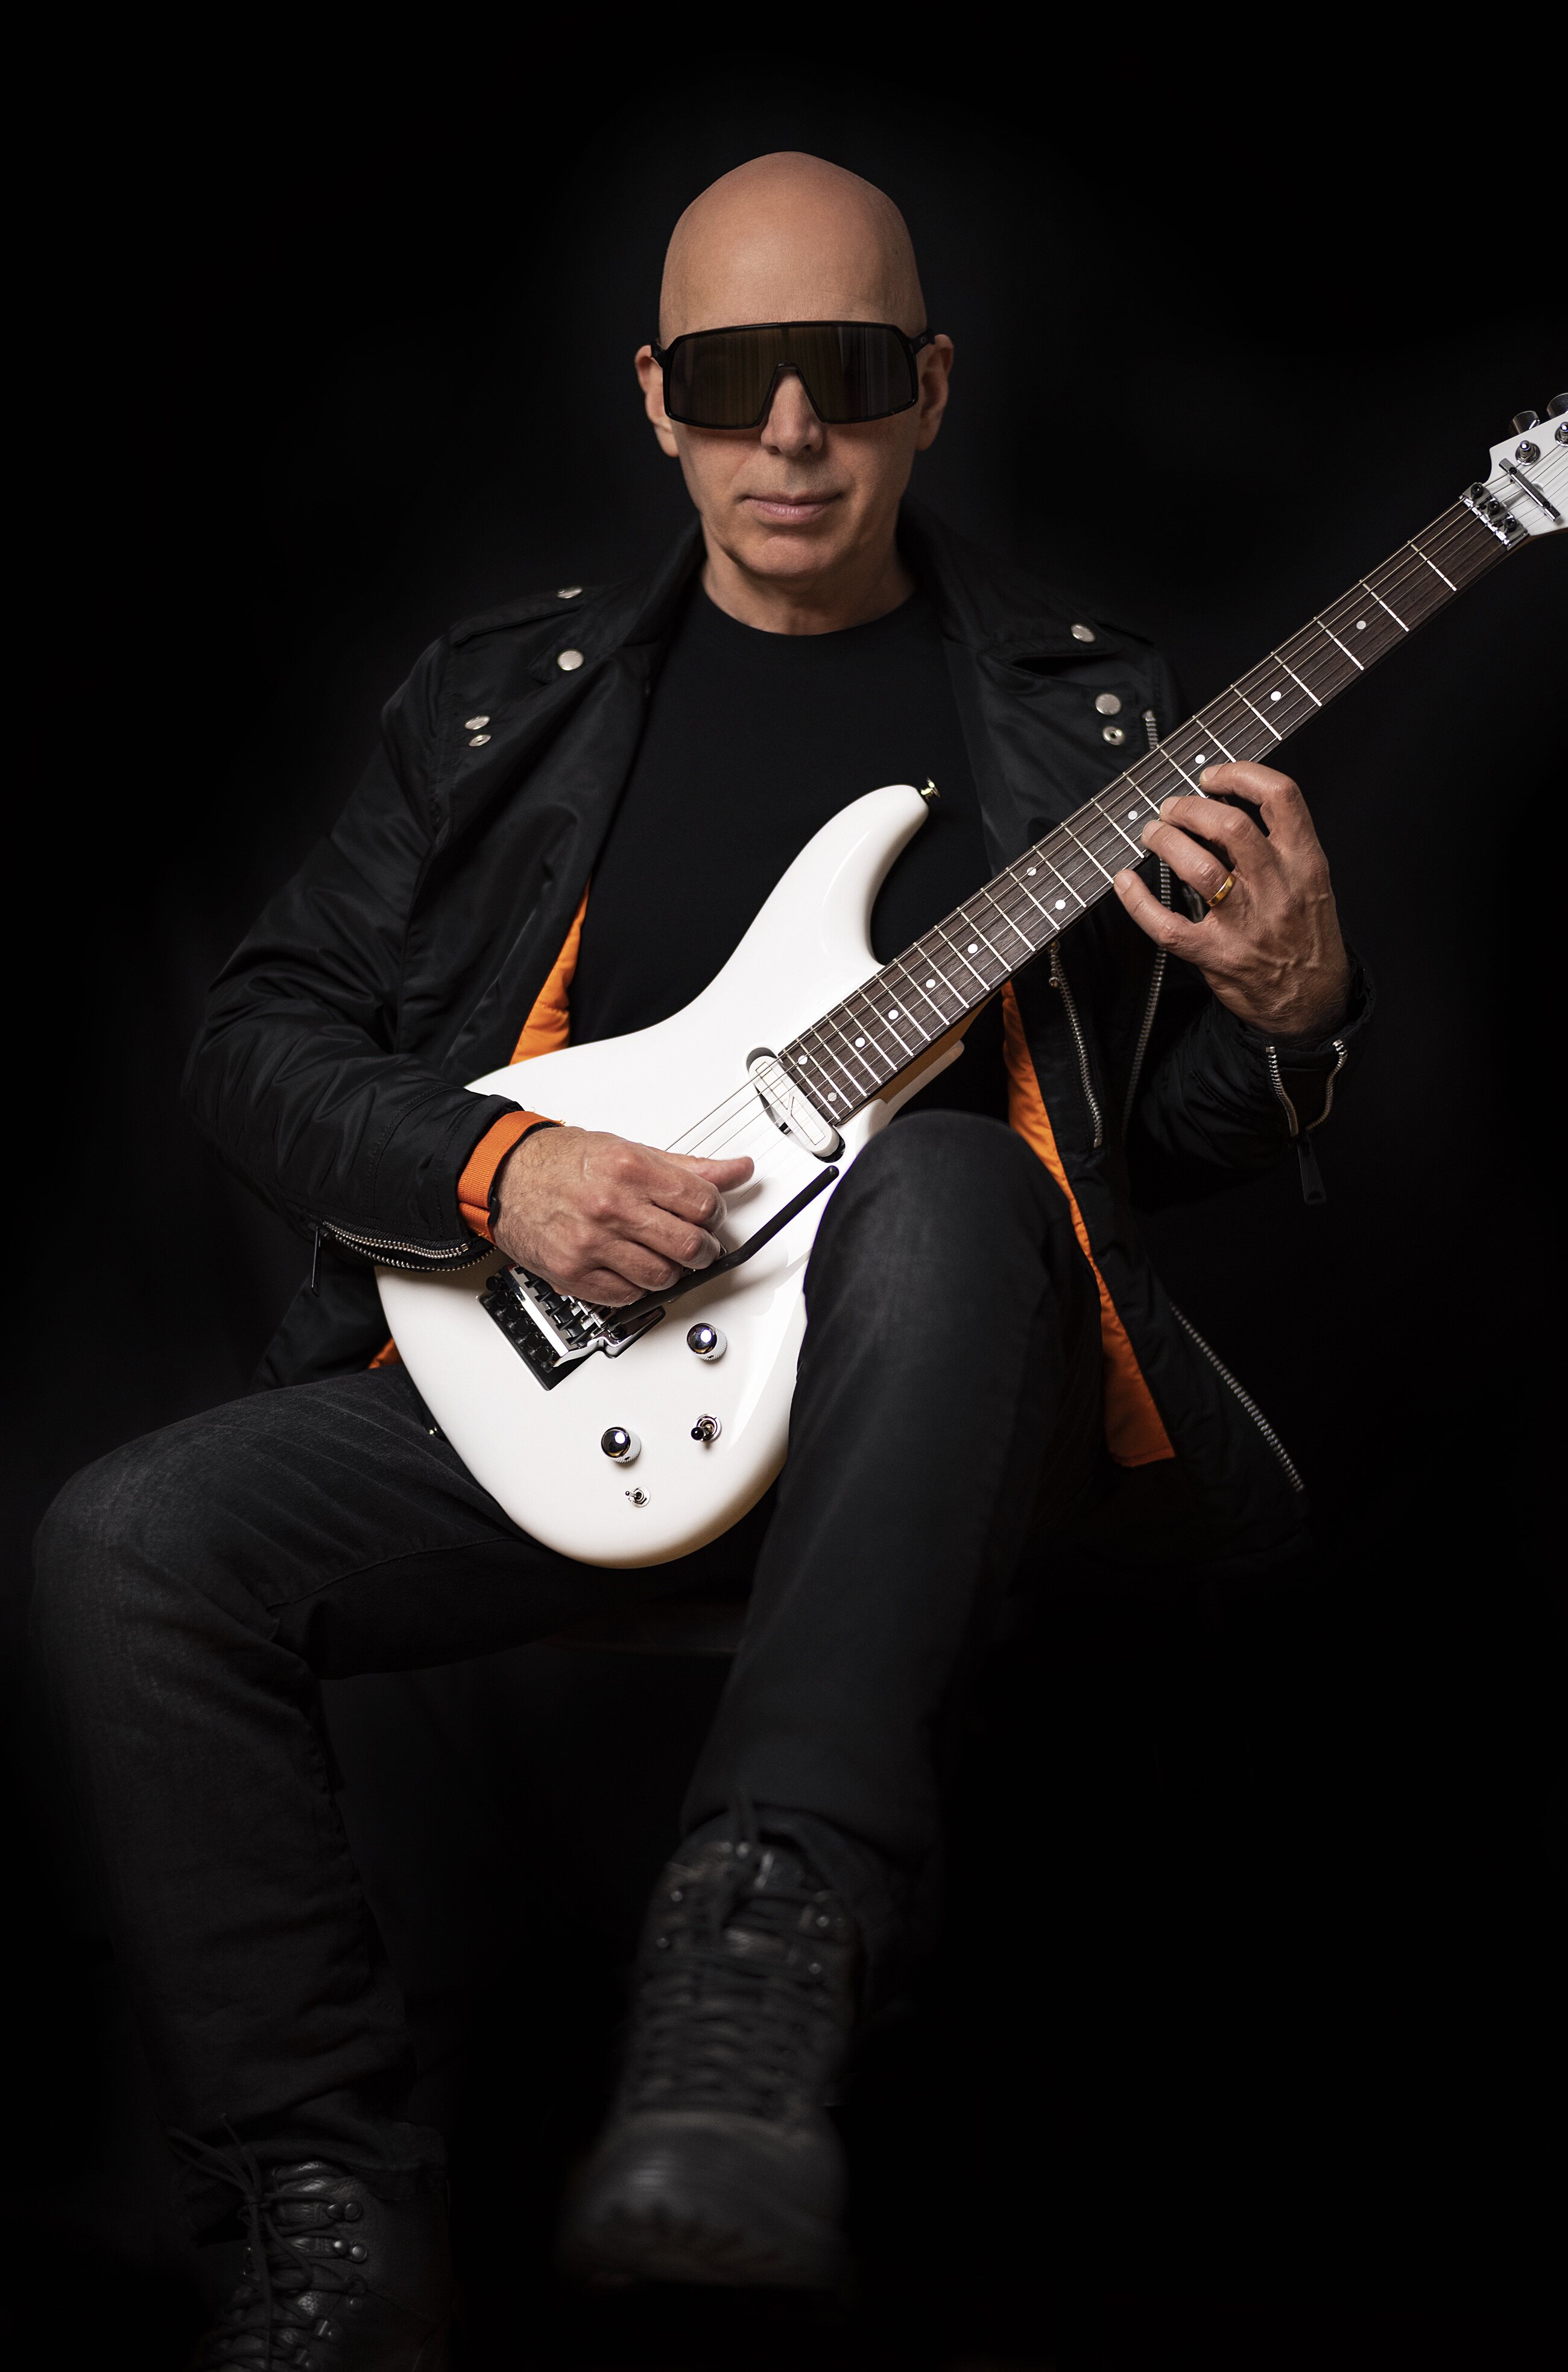 Joe Satriani posing with guitar